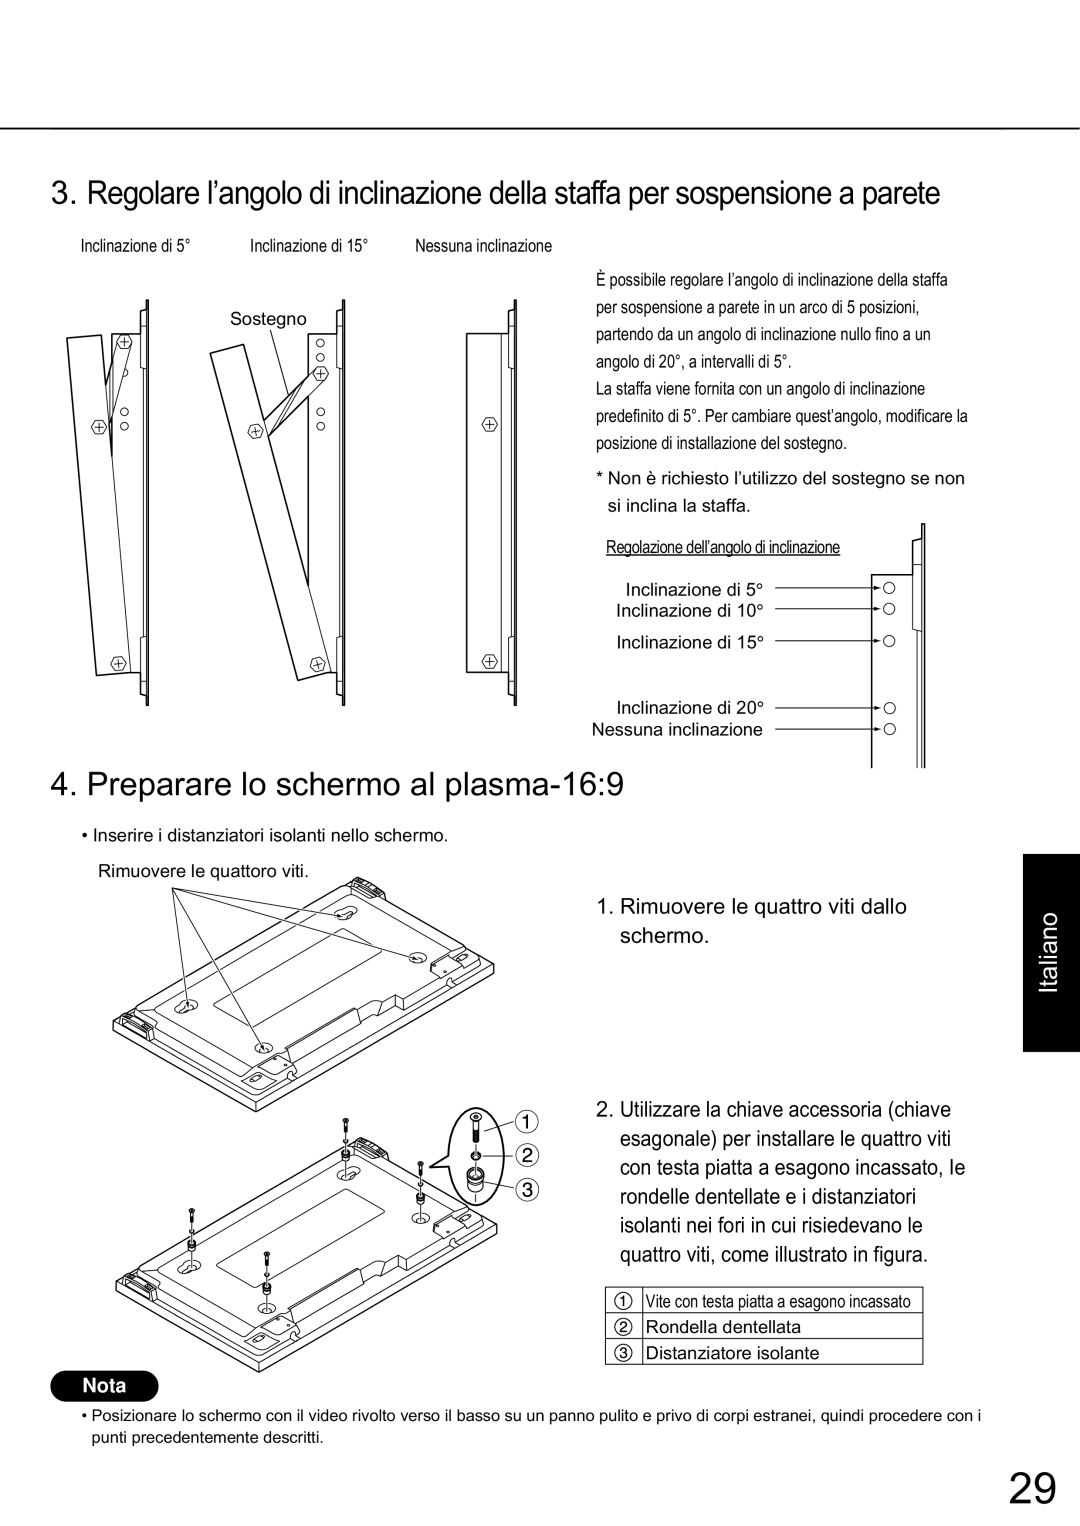 JVC TS-C50P2G manual Preparare lo schermo al plasma-16, Italiano, Rimuovere le quattro viti dallo schermo, N o t e, Nota 